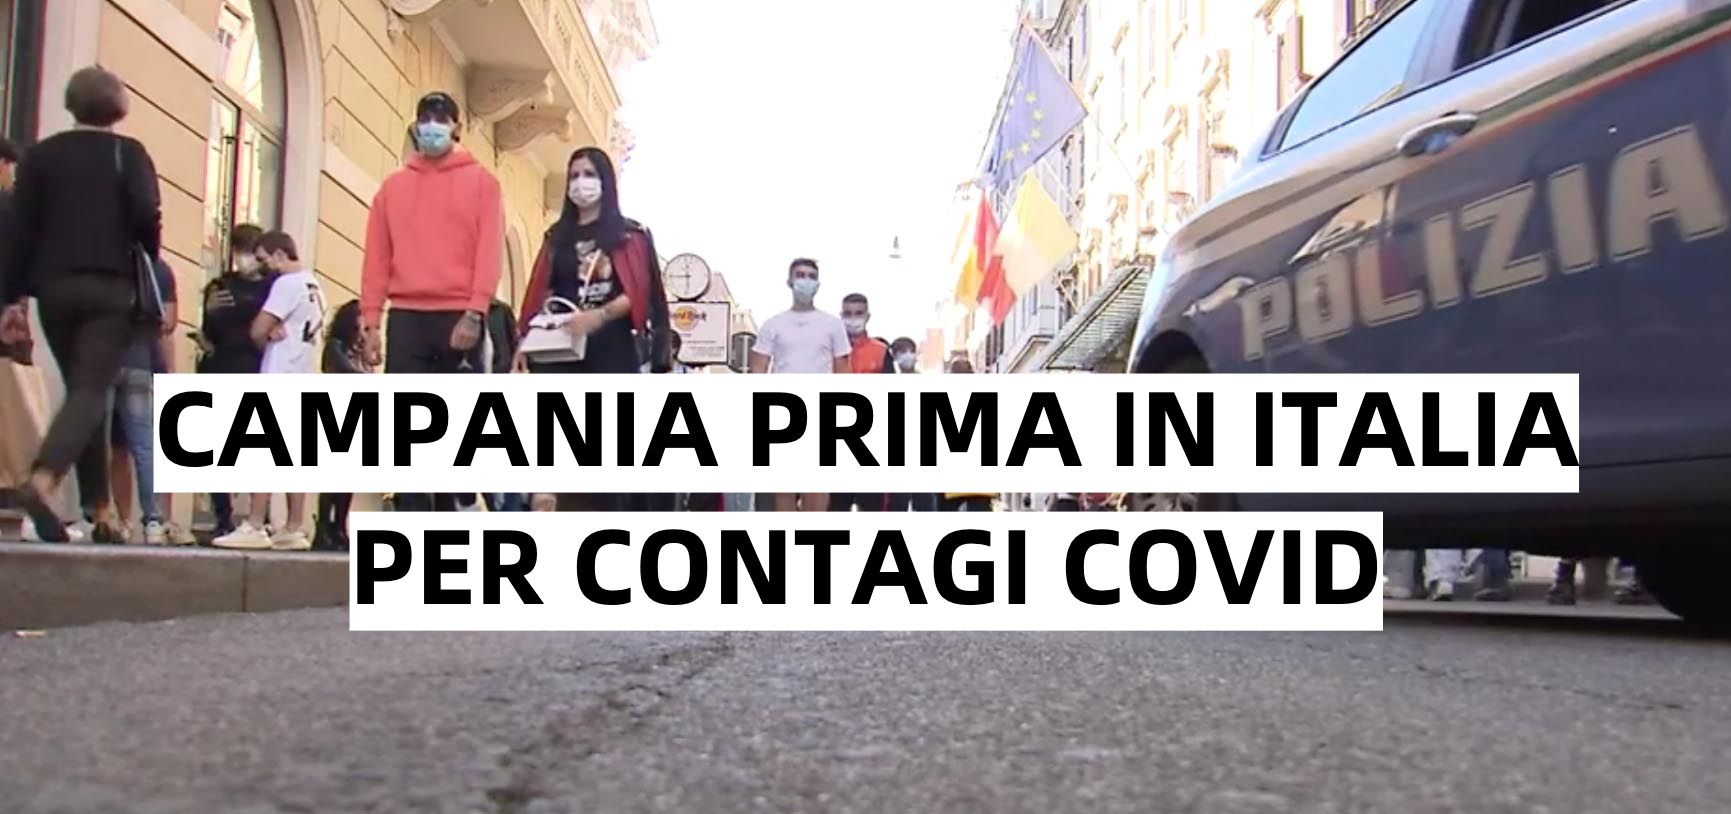 Covid, Campania ancora una volta prima in Italia per contagi